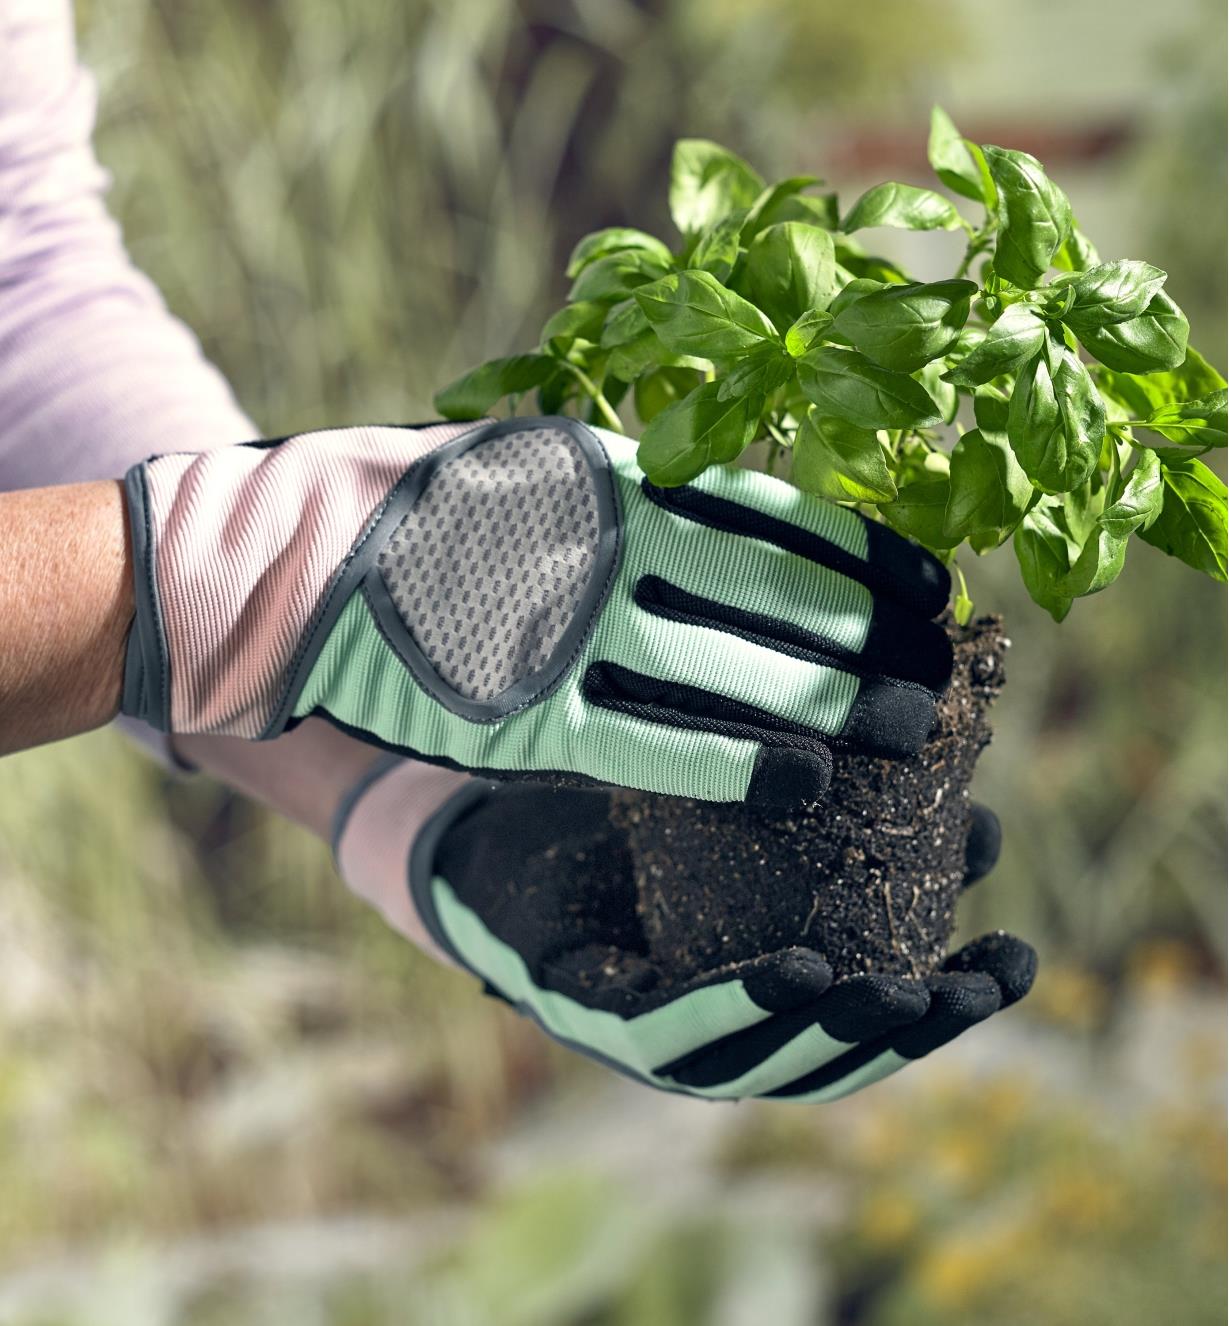 Femme équipée de gants de jardinage et tenant un plant de basilic